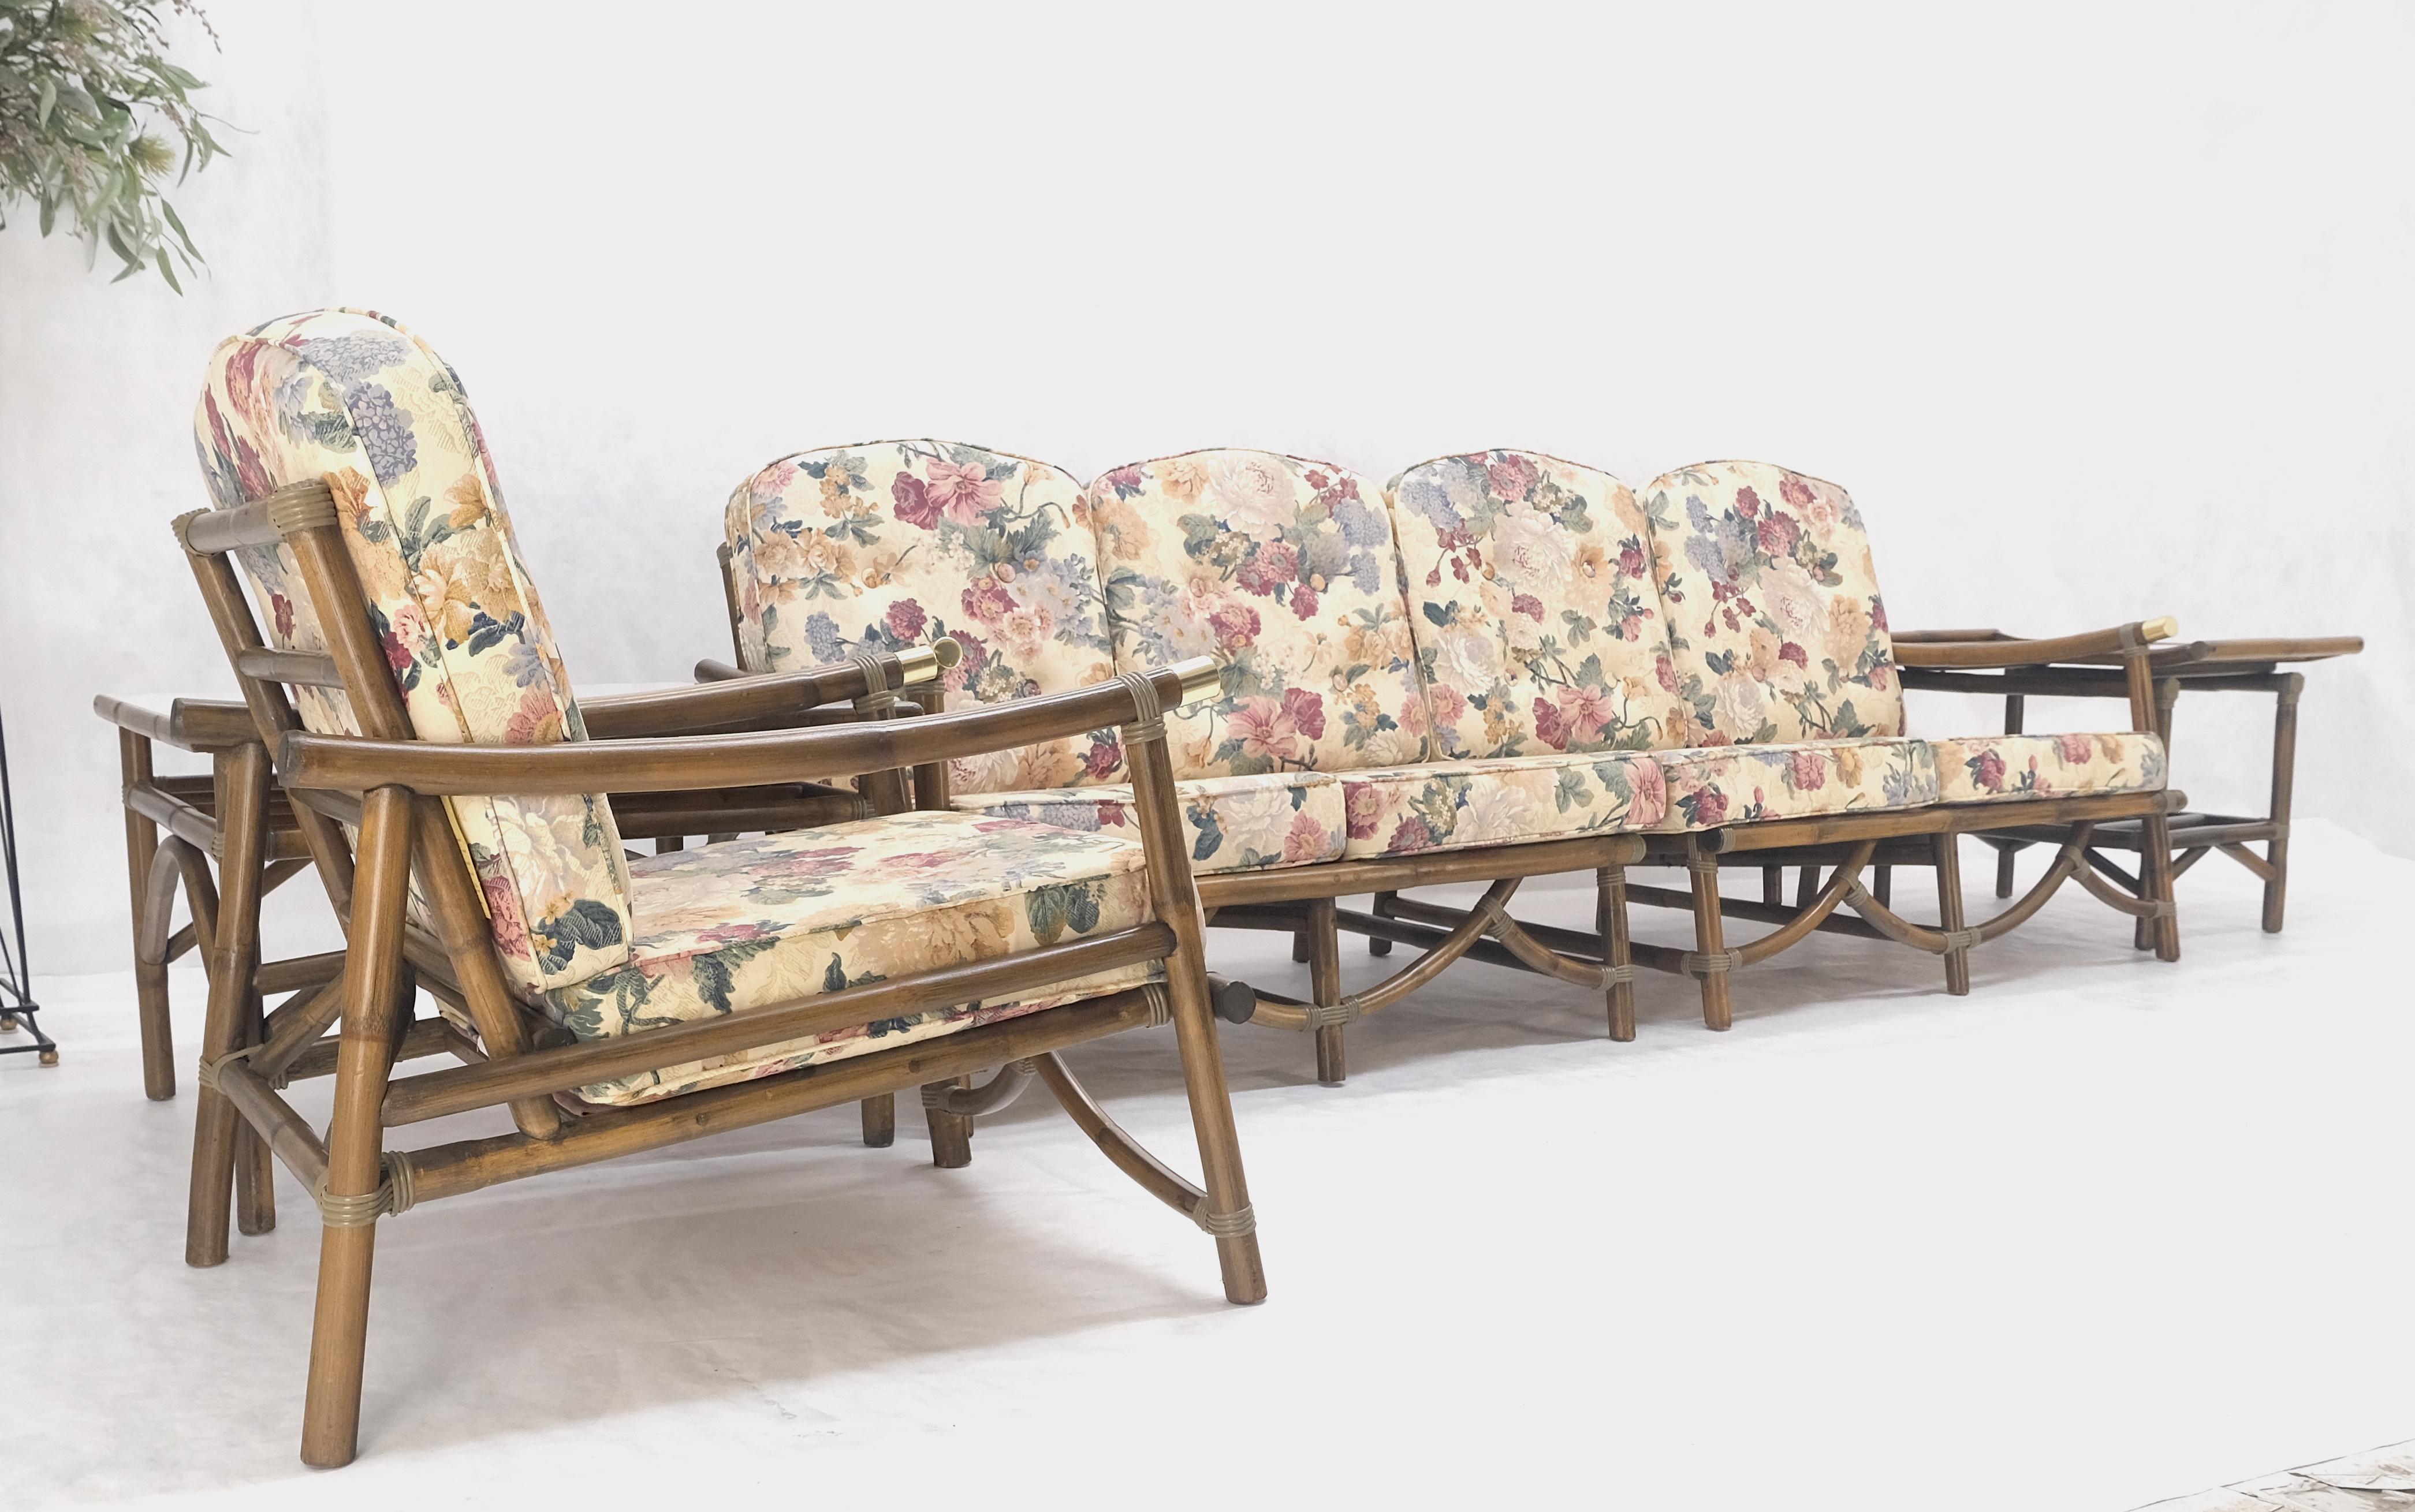 Vogue Rattan Bamboo c1970s Canapé Chaise assortie Paire de tables de bout 5 Pcs Set Mint !
causeuses : 31 